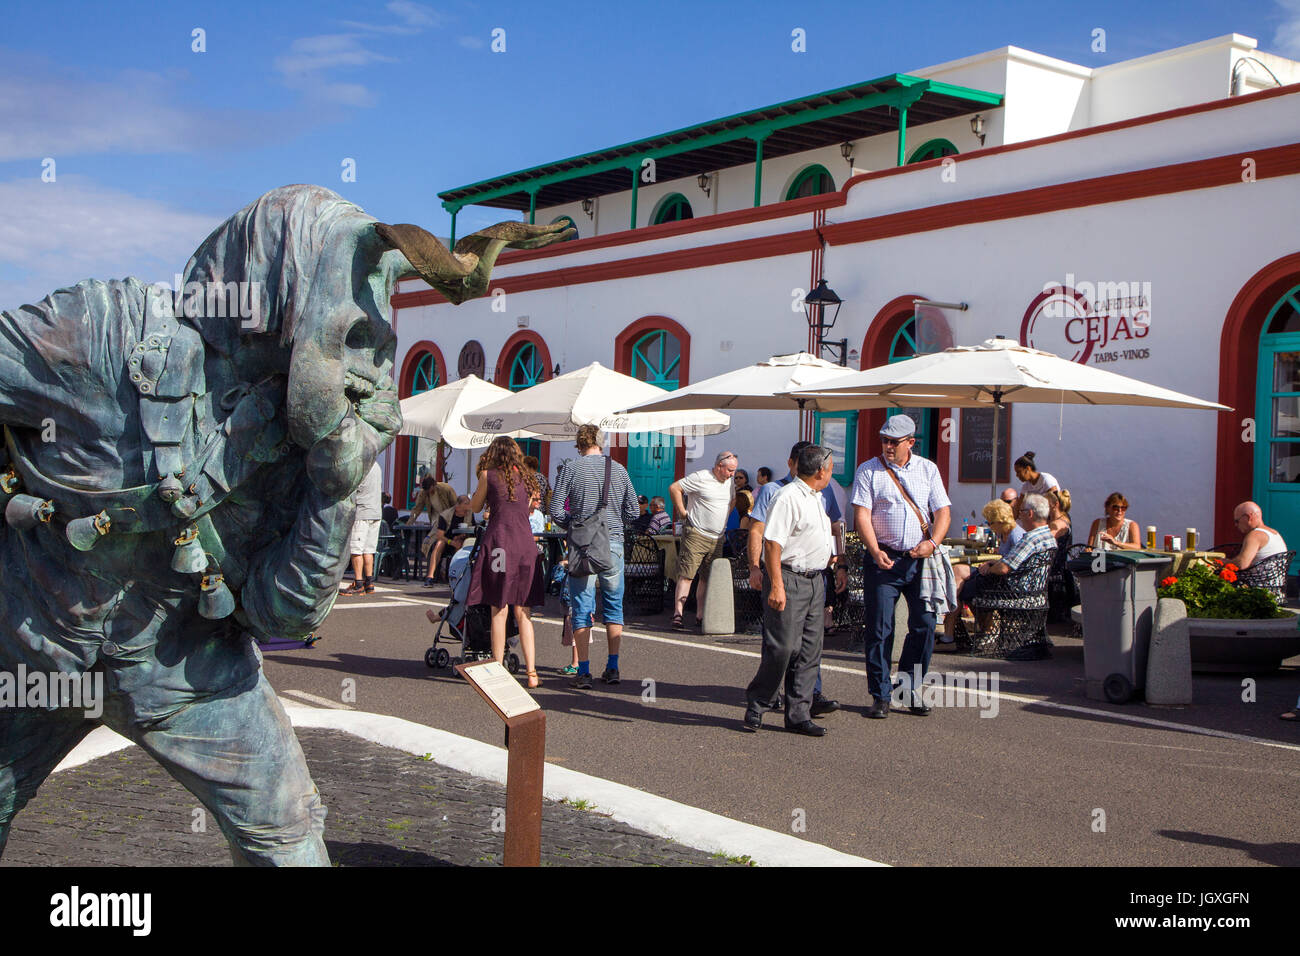 Elegua, sterben teufelsstatue, Strassencafe und marktstaende, sonntagsmarkt in Teguise, Lanzarote, Kanarische Inseln, Europa | Elegua, ein Teufel Statue, Str Stockfoto